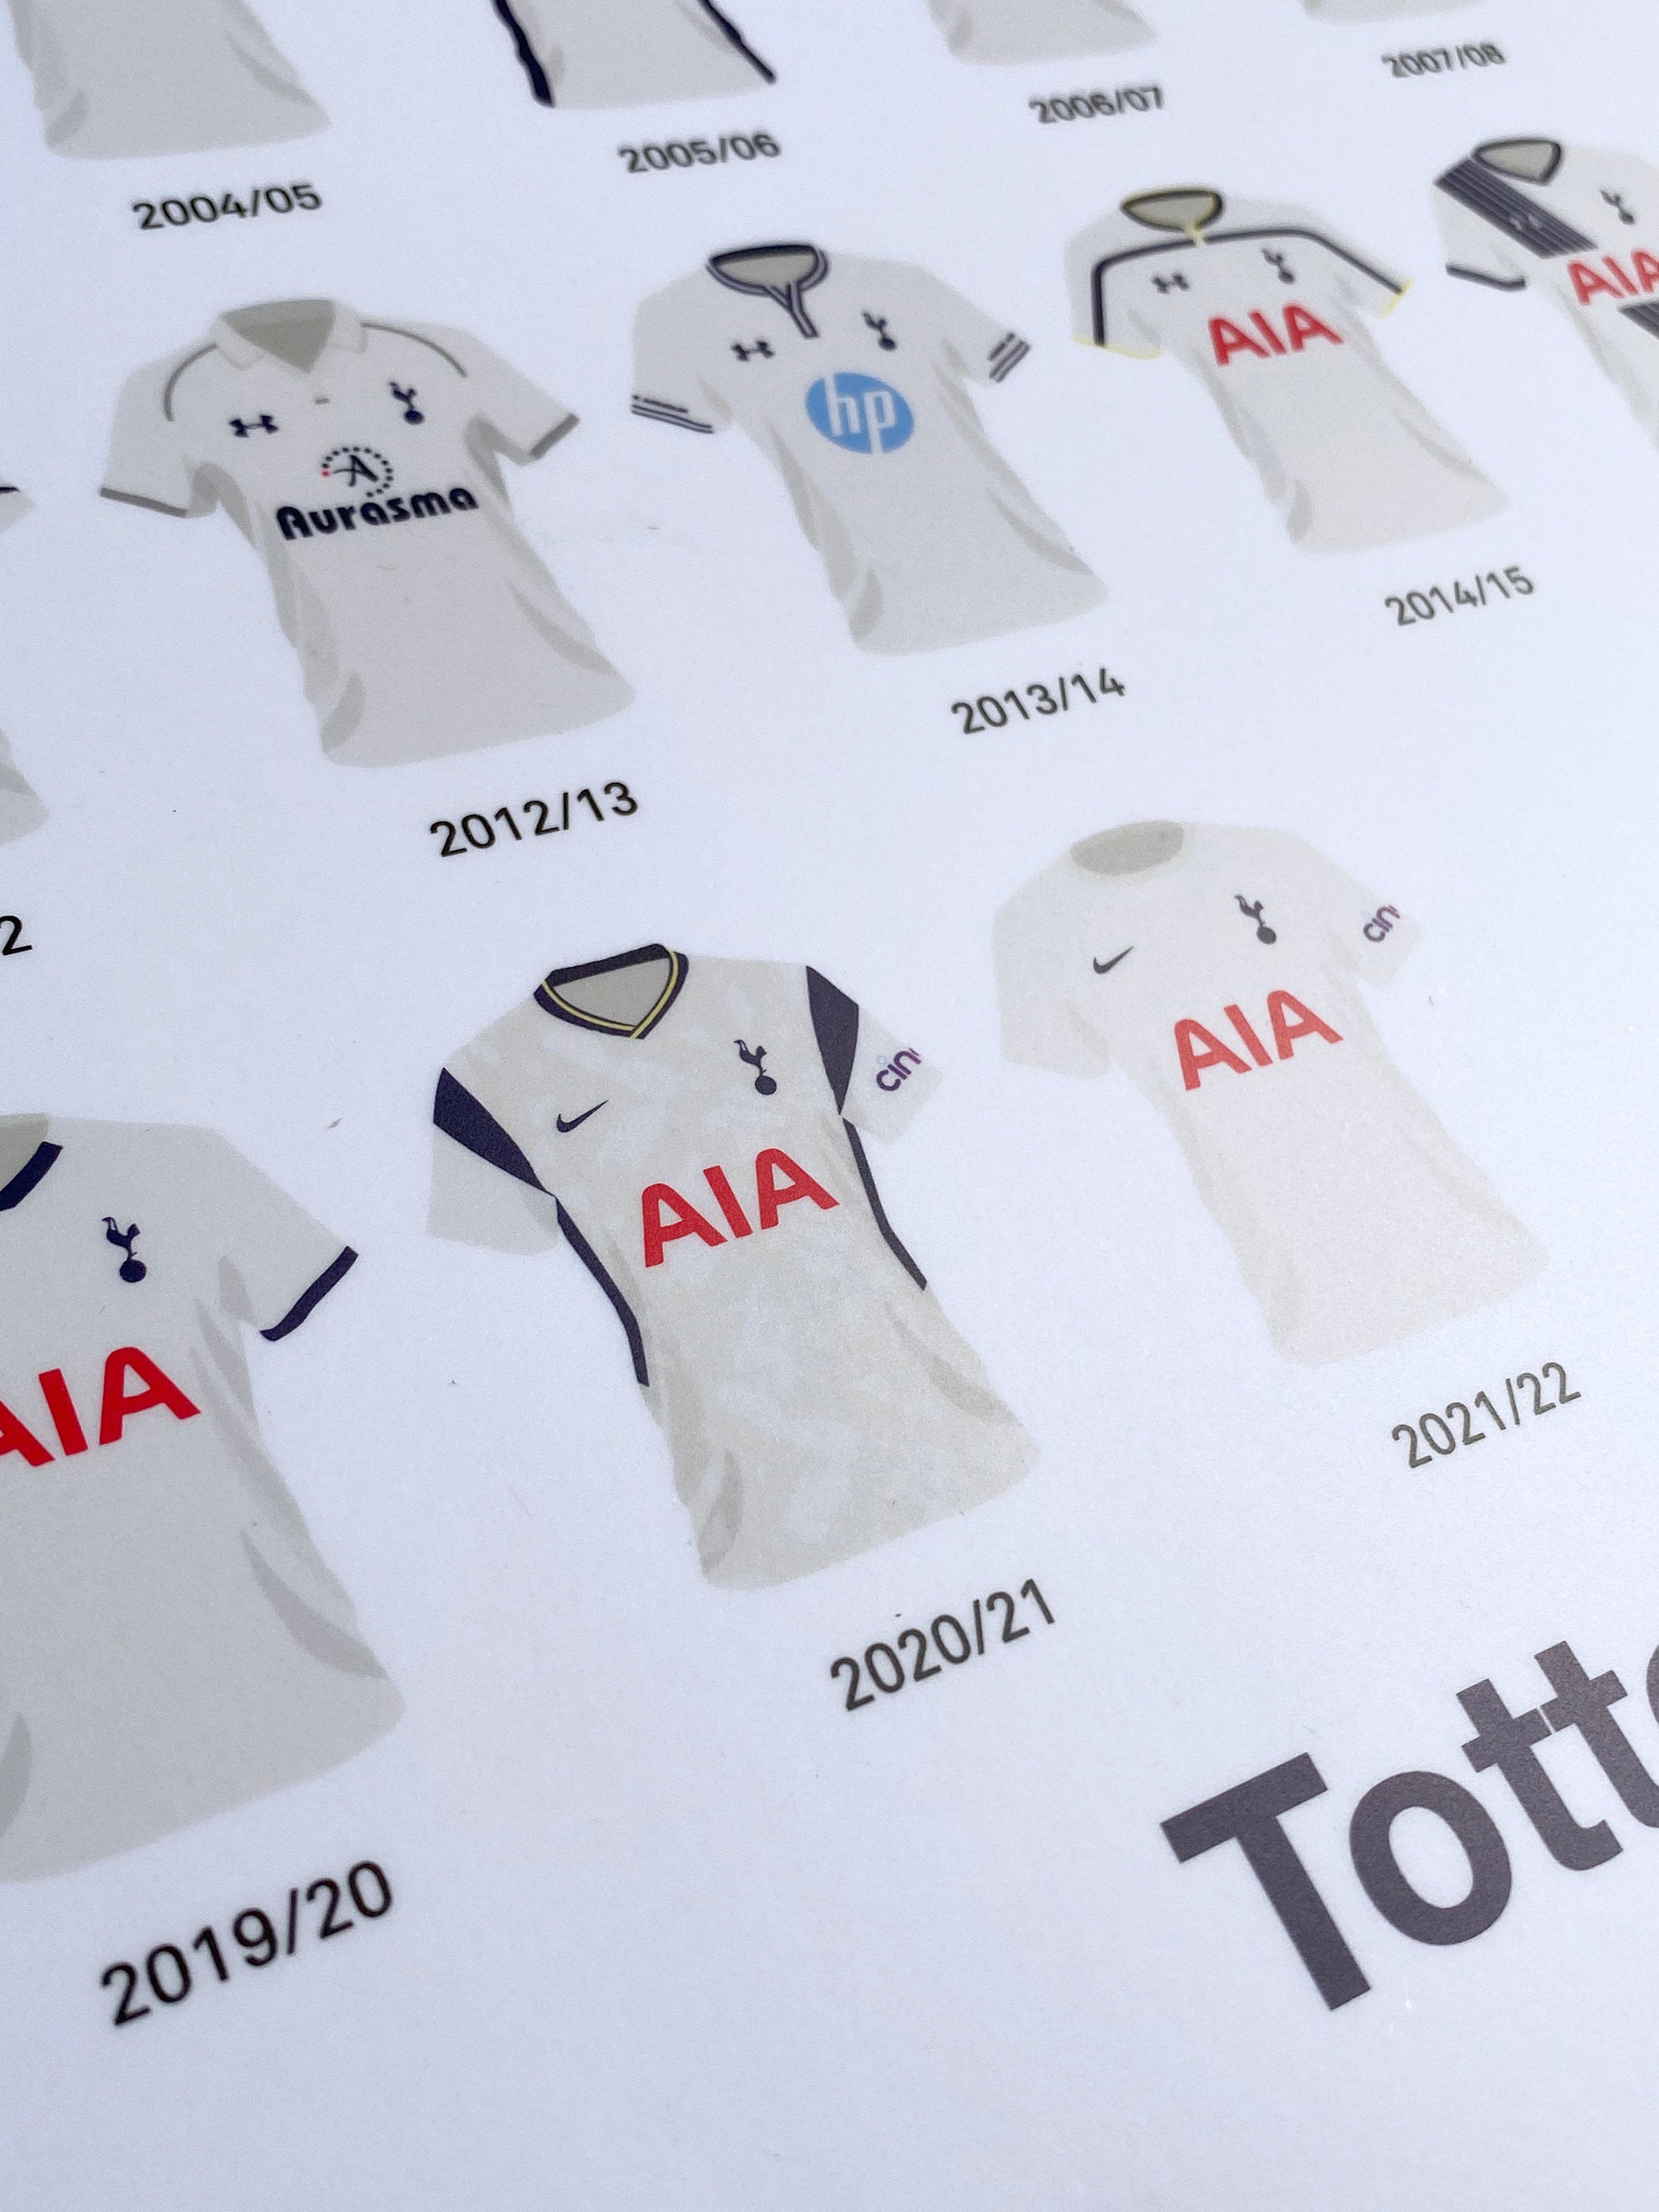 Tottenham Hotspur 2007-08 Home Kit